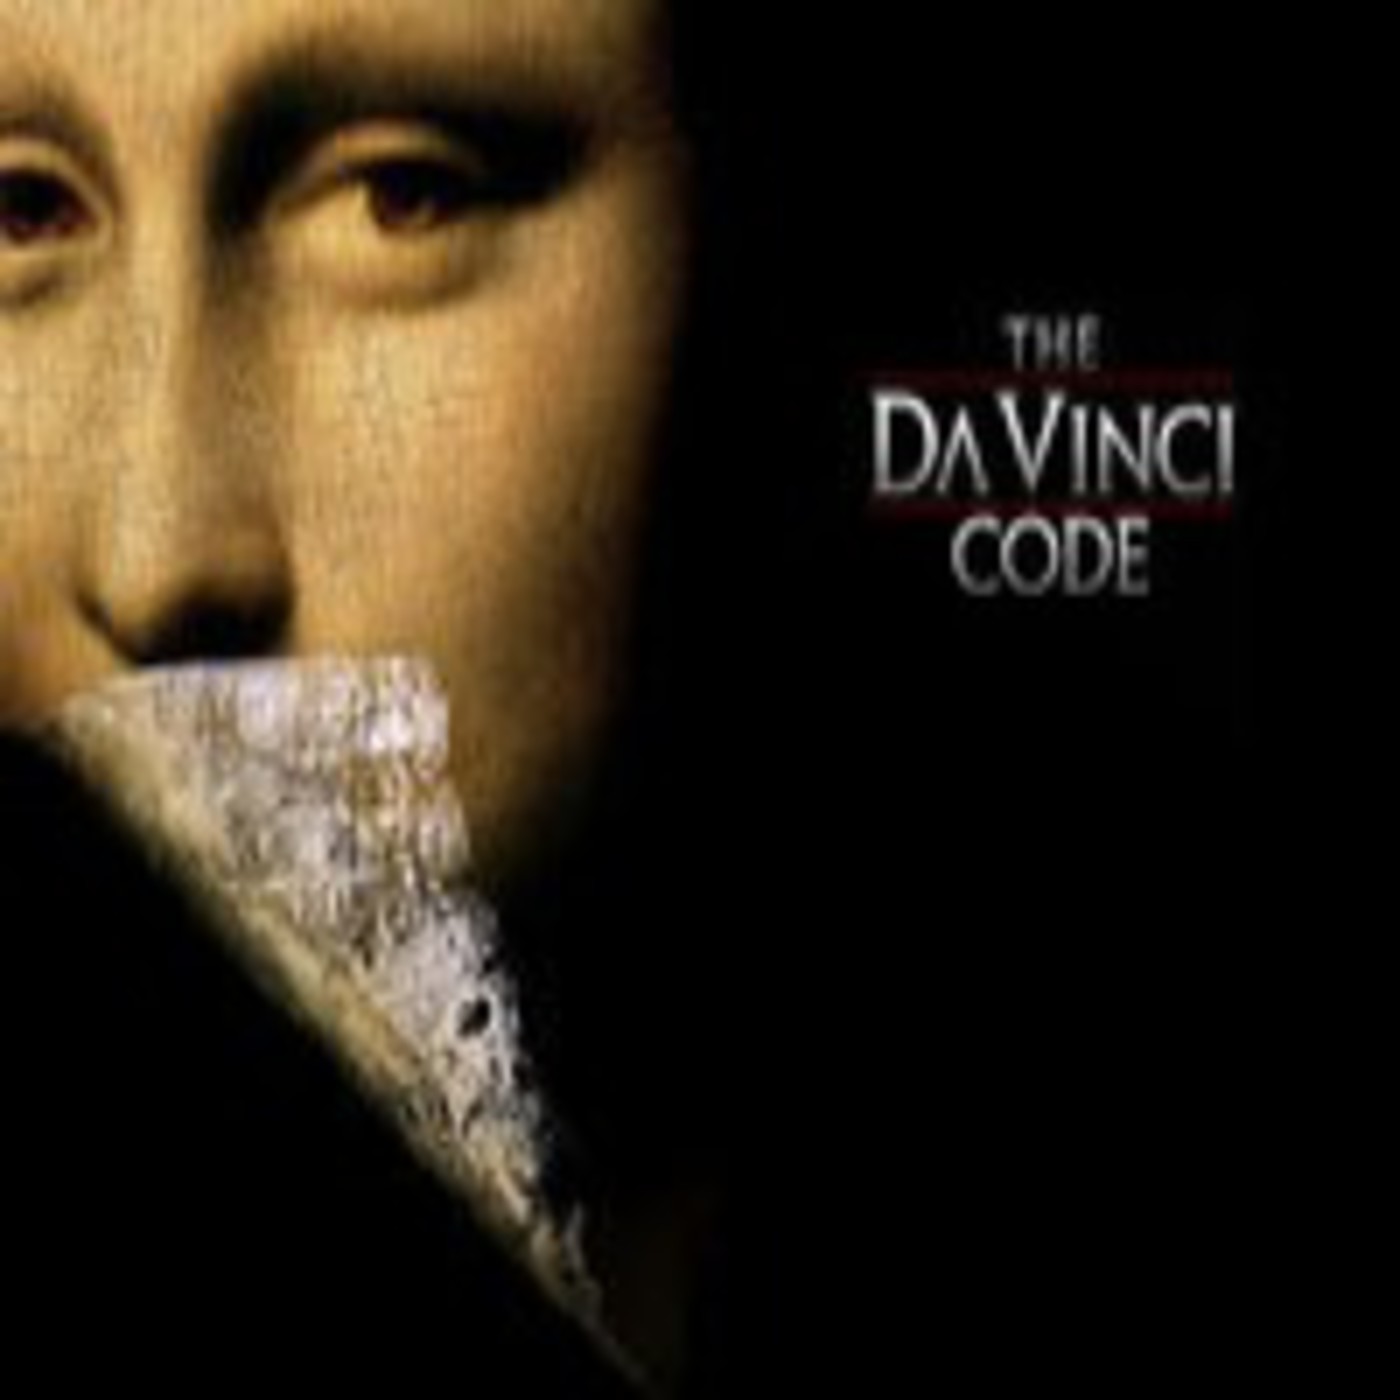 Ver El Codigo Da Vinci Online Castellano Gratis